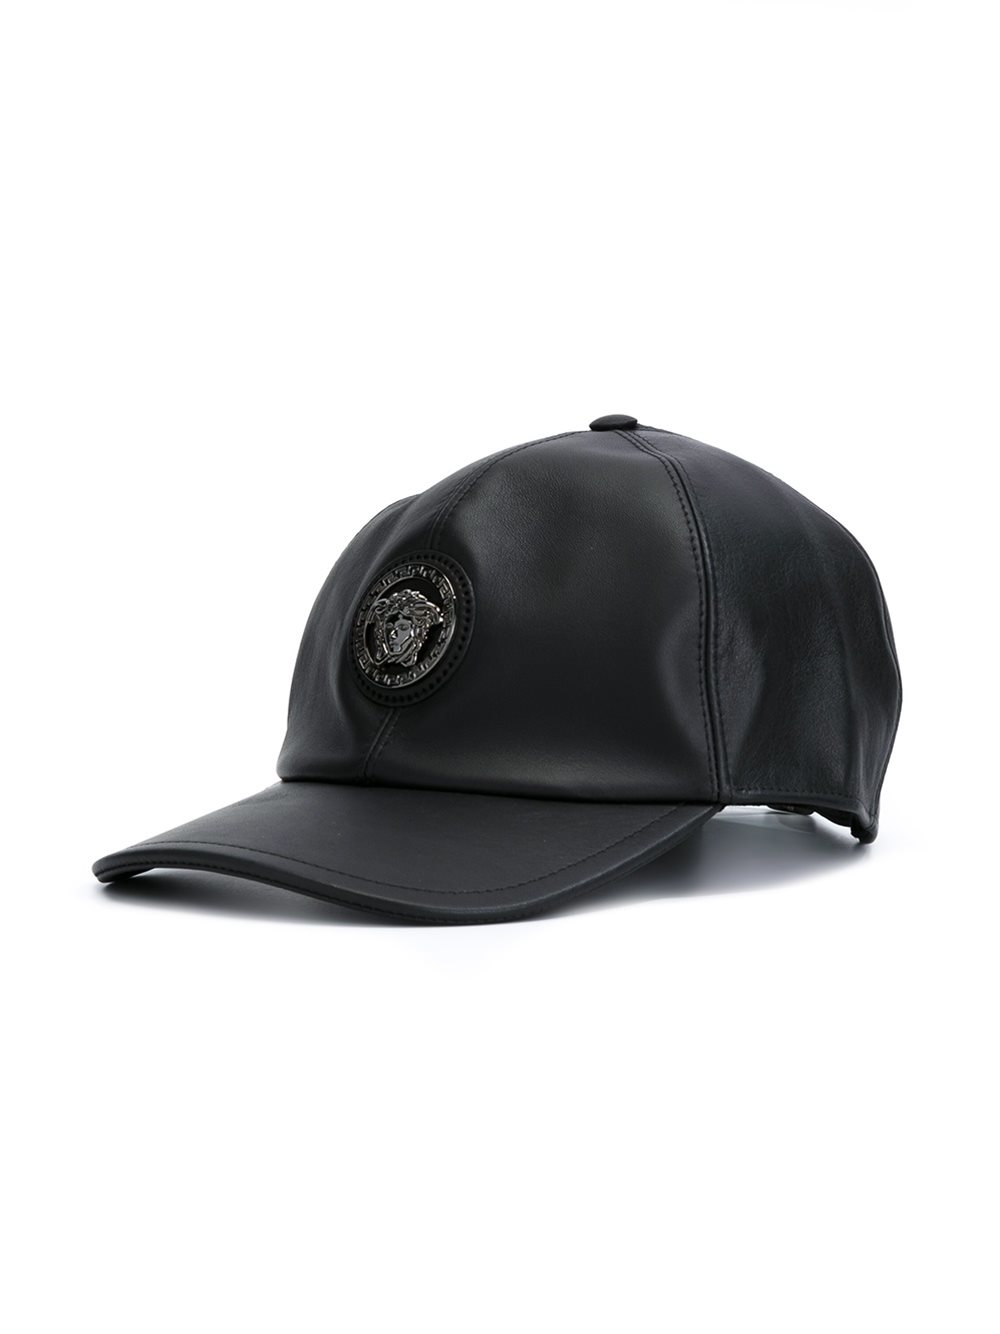 Versace Leather Medusa Baseball Cap in Black for Men - Lyst